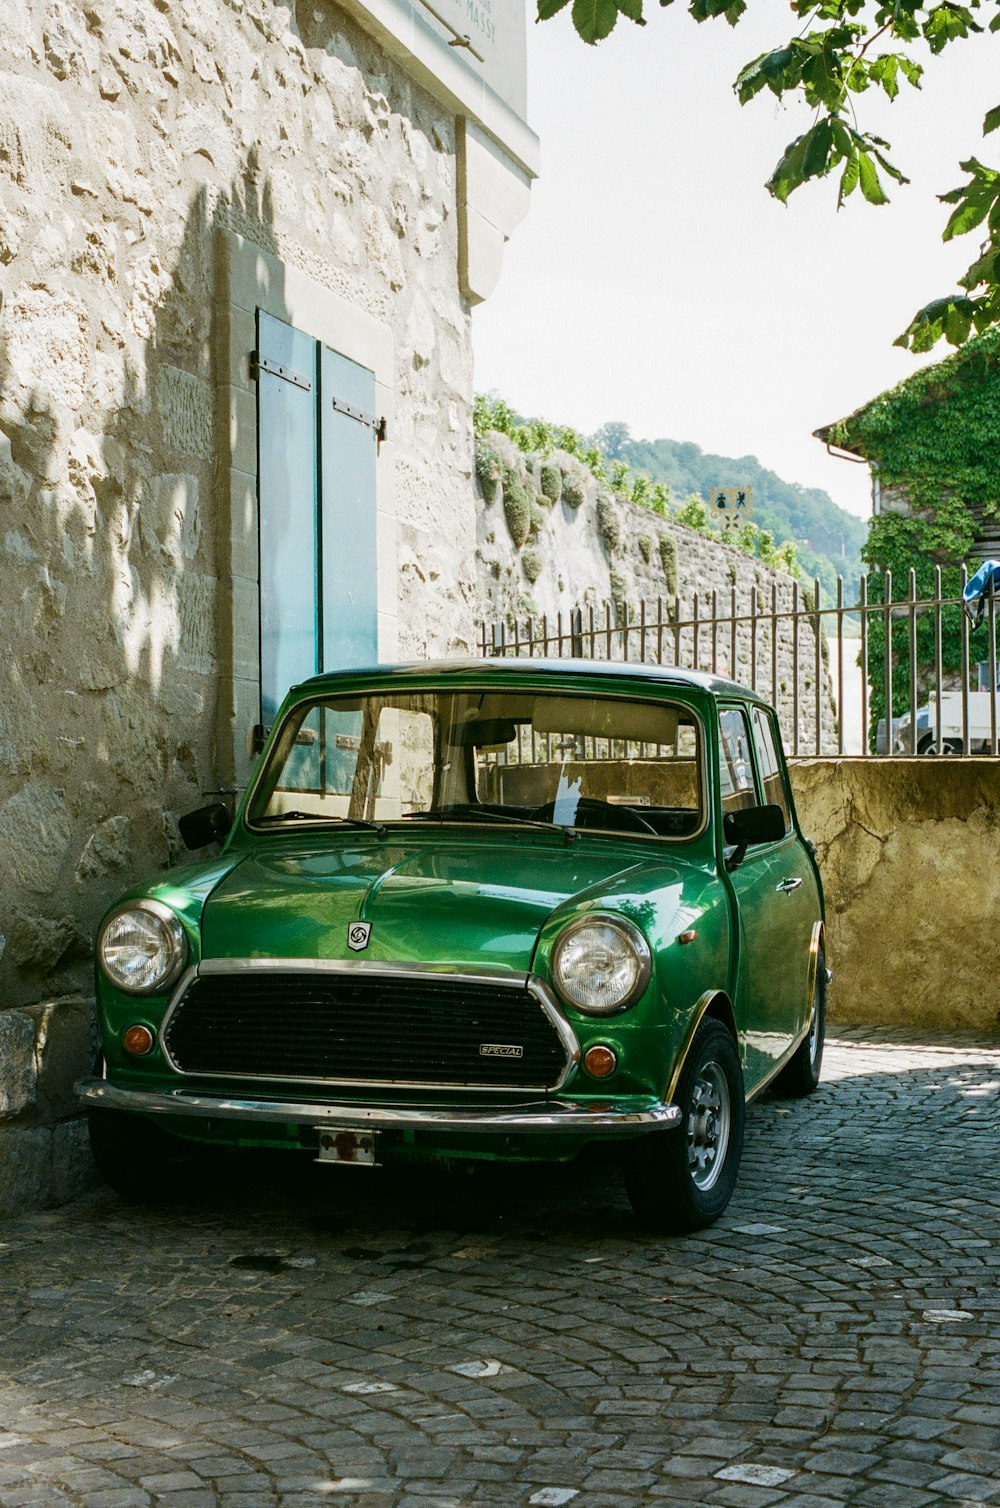 조약돌 거리에 주차된 작은 녹색 차